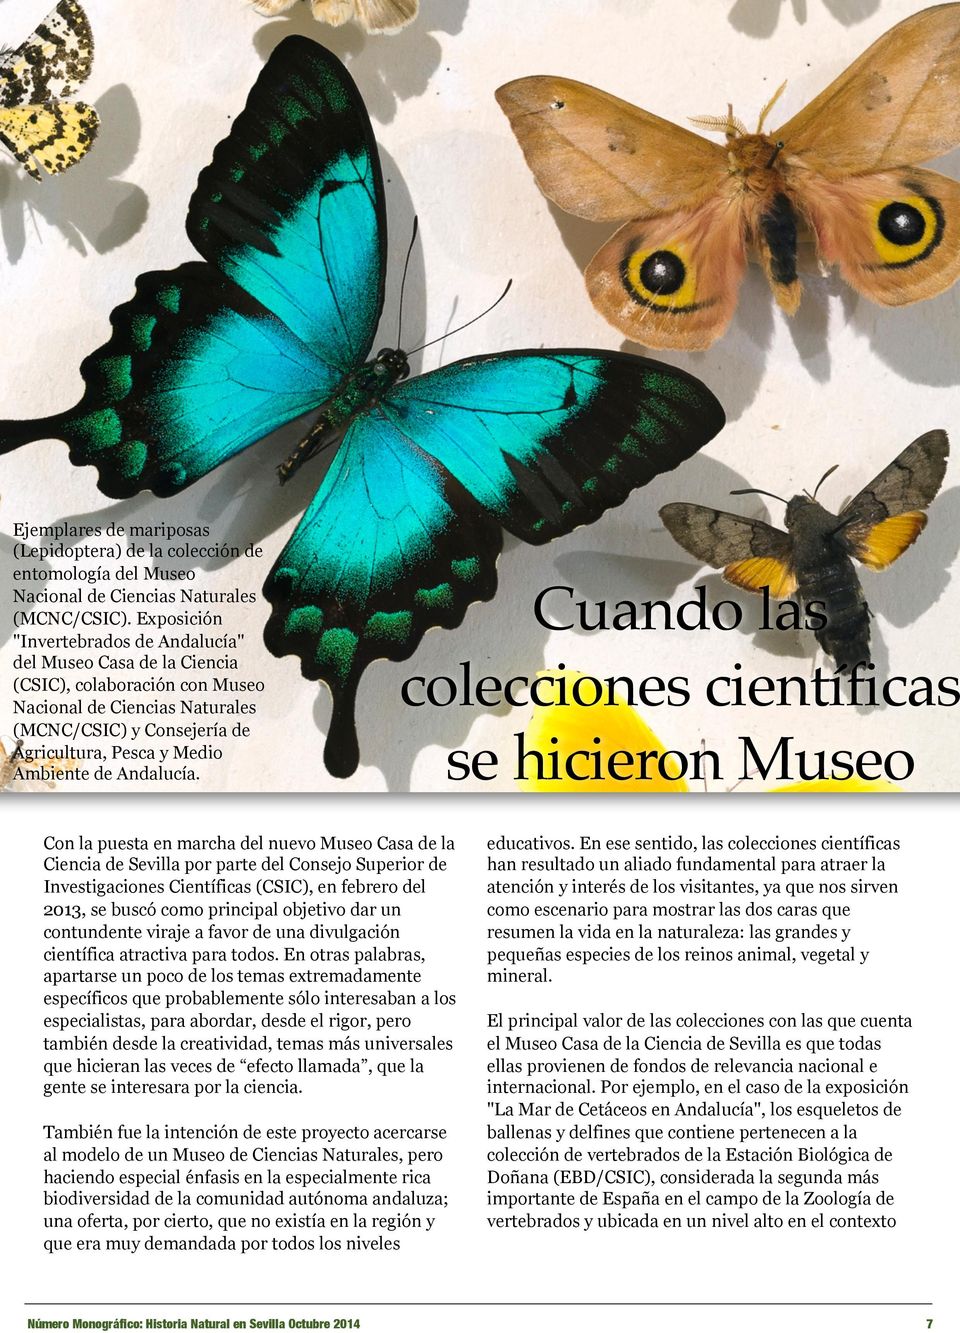 Exposición "Invertebrados de Andalucía" del Museo Casa de la Ciencia (CSIC), colaboración con Museo Nacional de Ciencias Naturales (MCNC/CSIC) y Consejería de Agricultura, Pesca y Medio Ambiente de